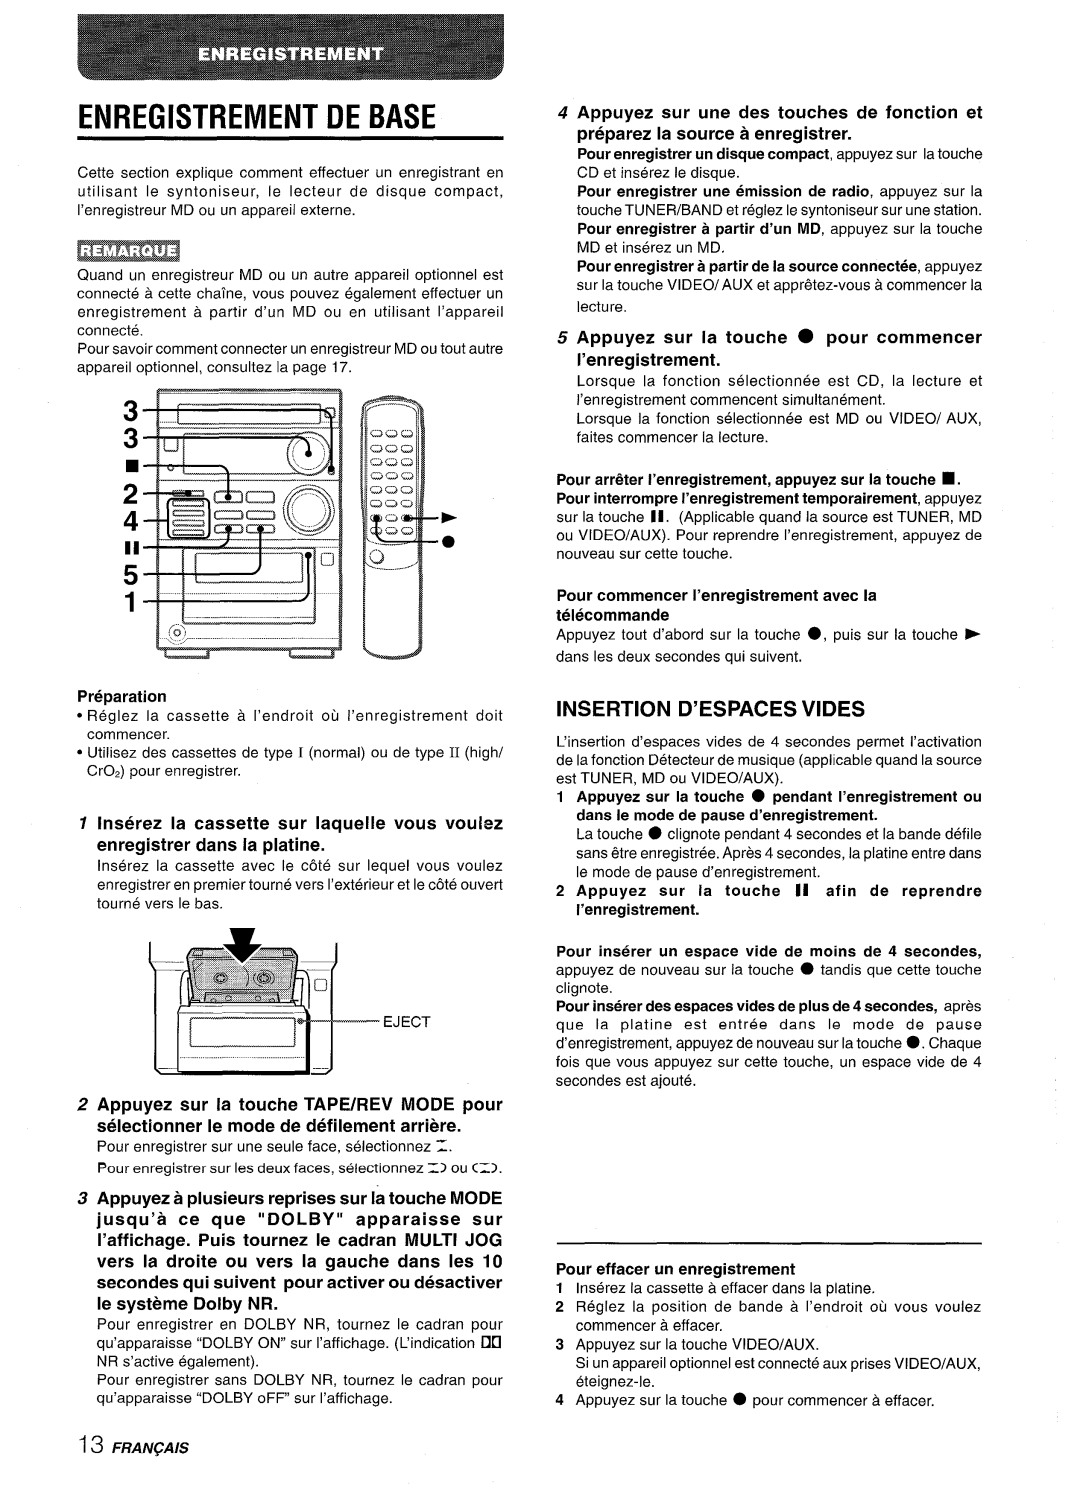 Aiwa XR-M35 manual Enregistrement De Base, Insertion D’Espaces Vides, Appuyez a plusieurs reprises sur la touche MODE 